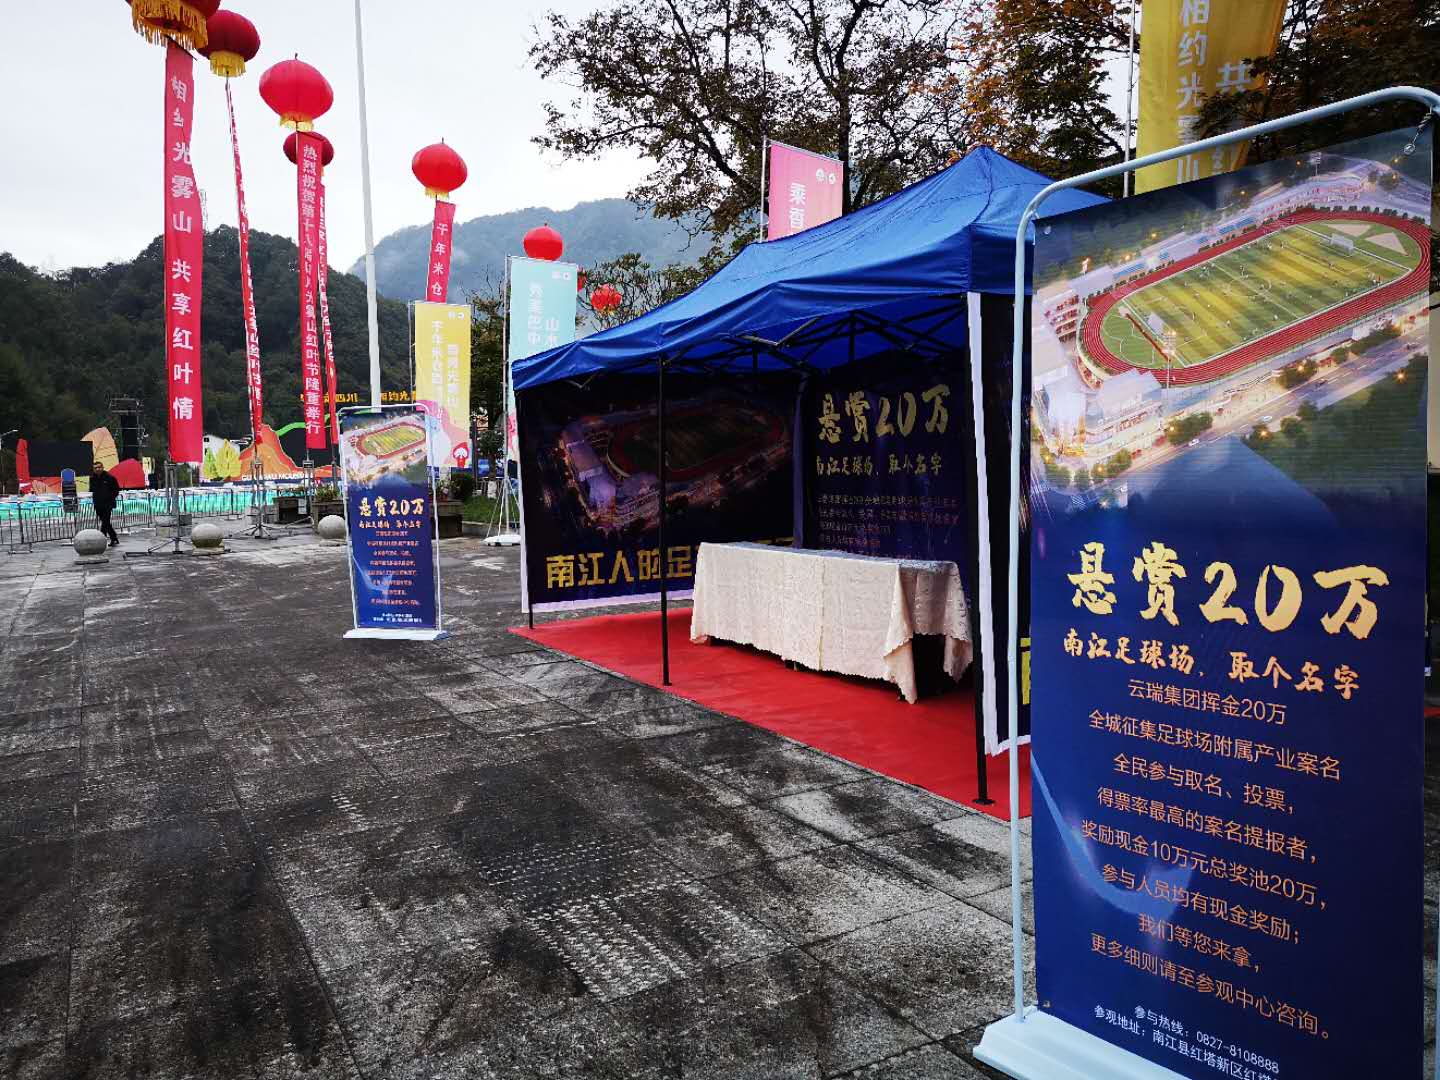 南江足球场项目依托光雾山红叶节开展系列宣传活动